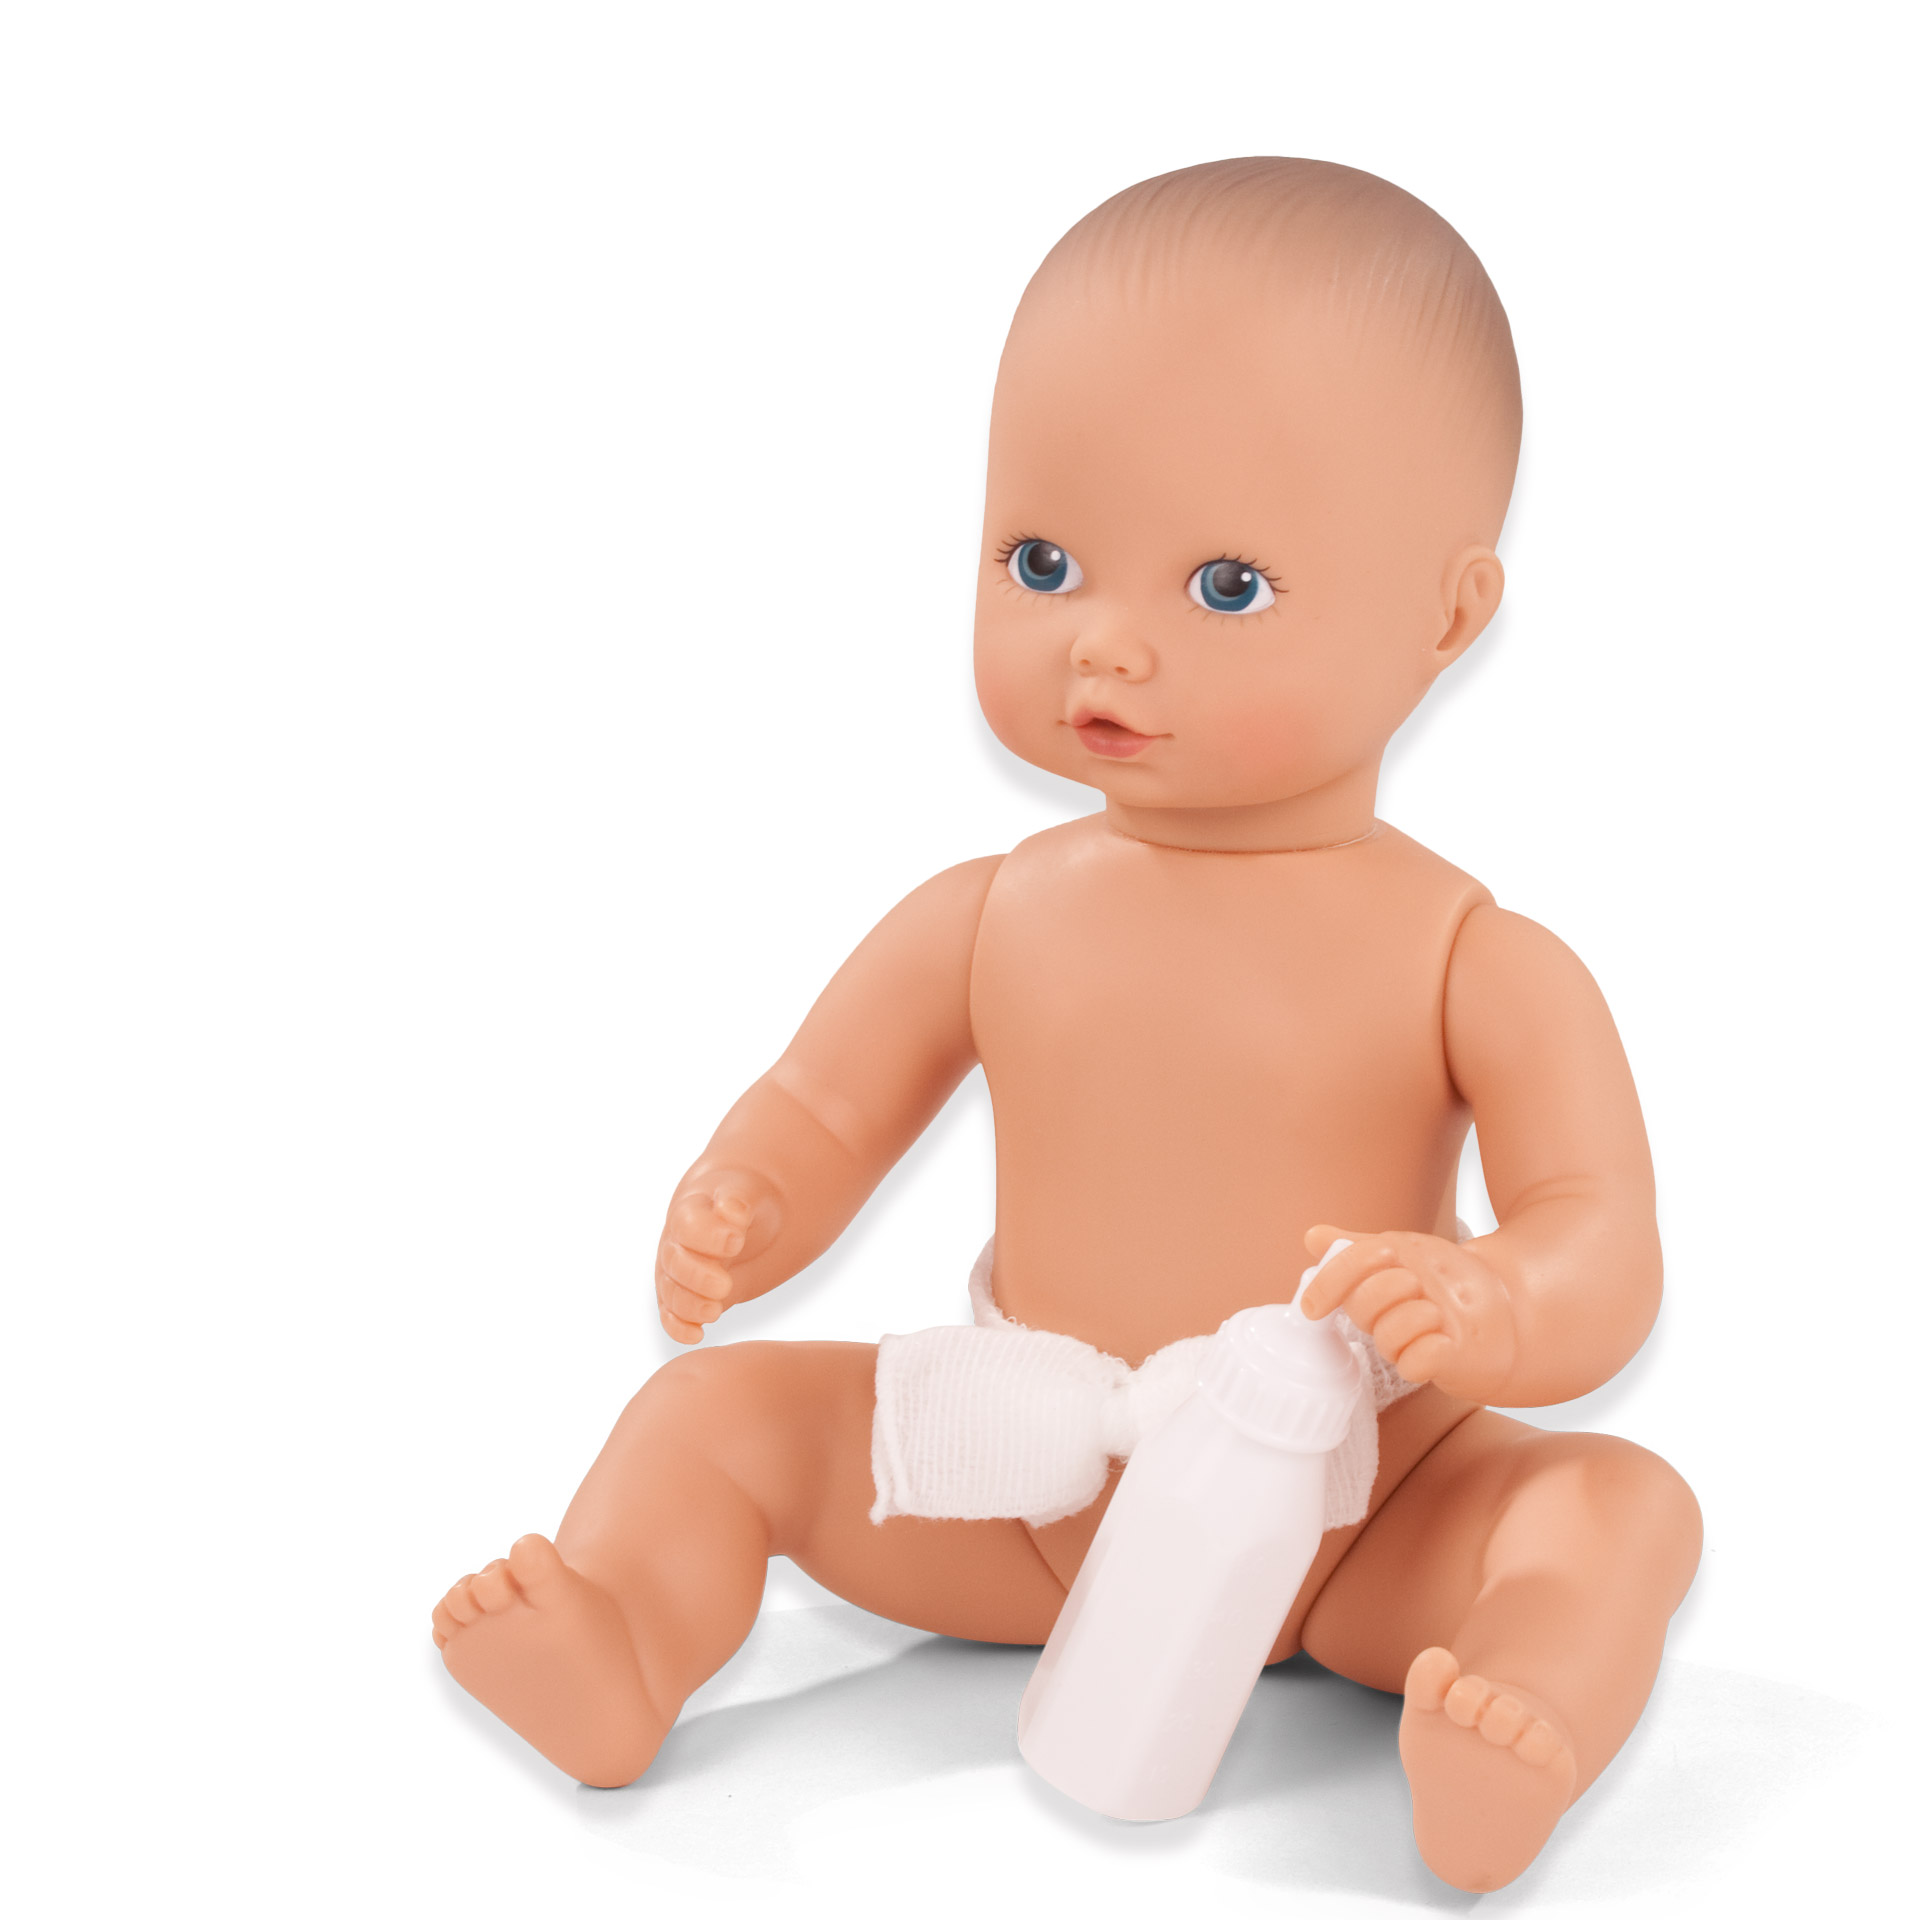 newborn-aquini-badepuppe-goetz-trinkflasche-nabelbinde-blaue-augen